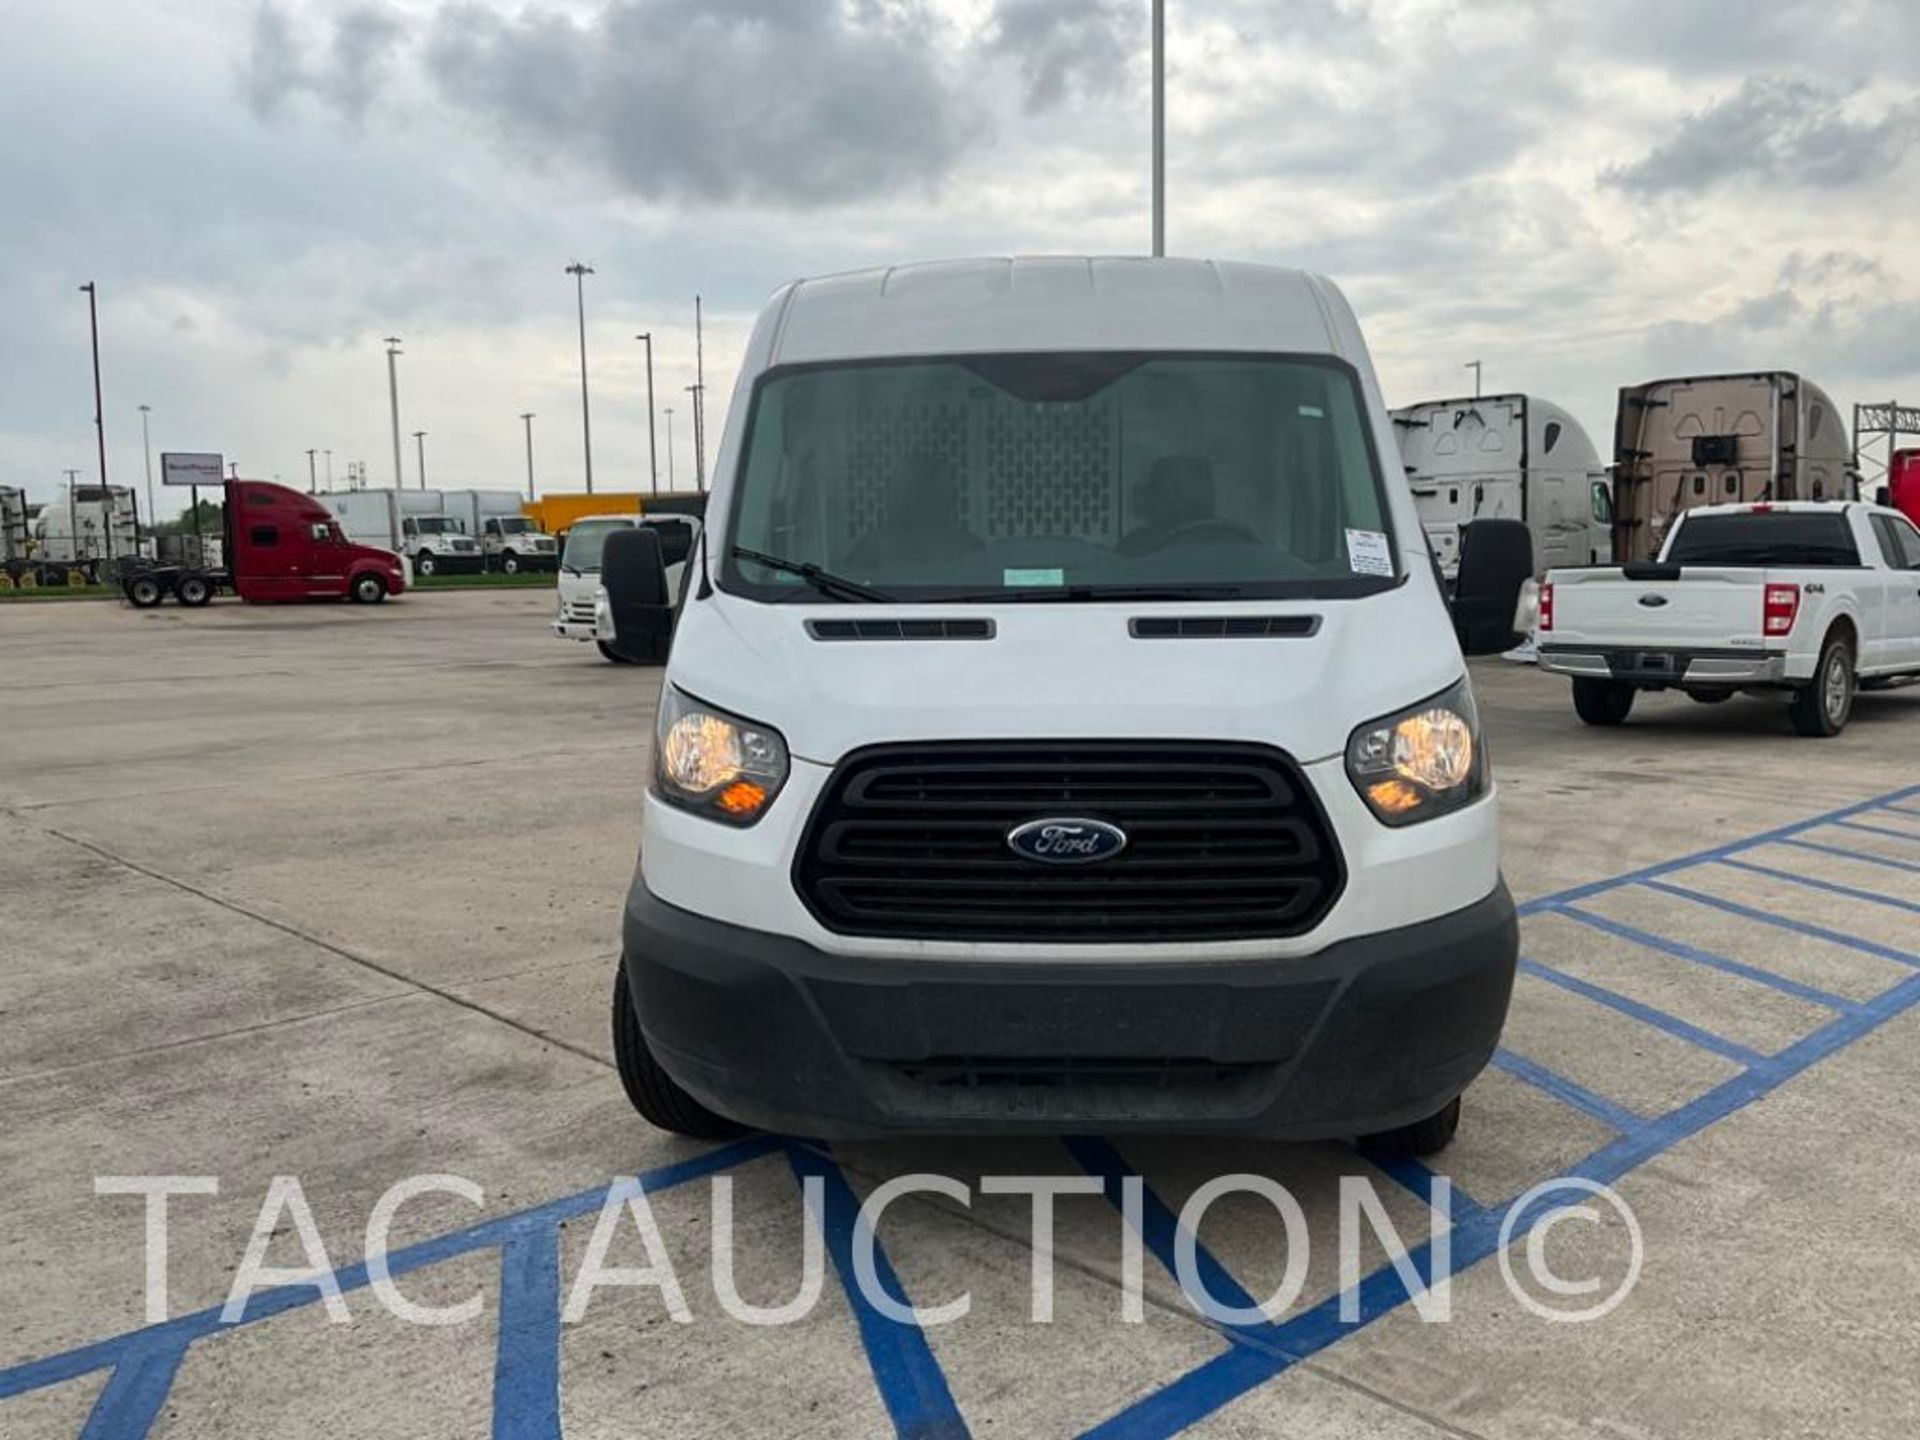 2019 Ford Transit 150 Cargo Van - Image 8 of 56